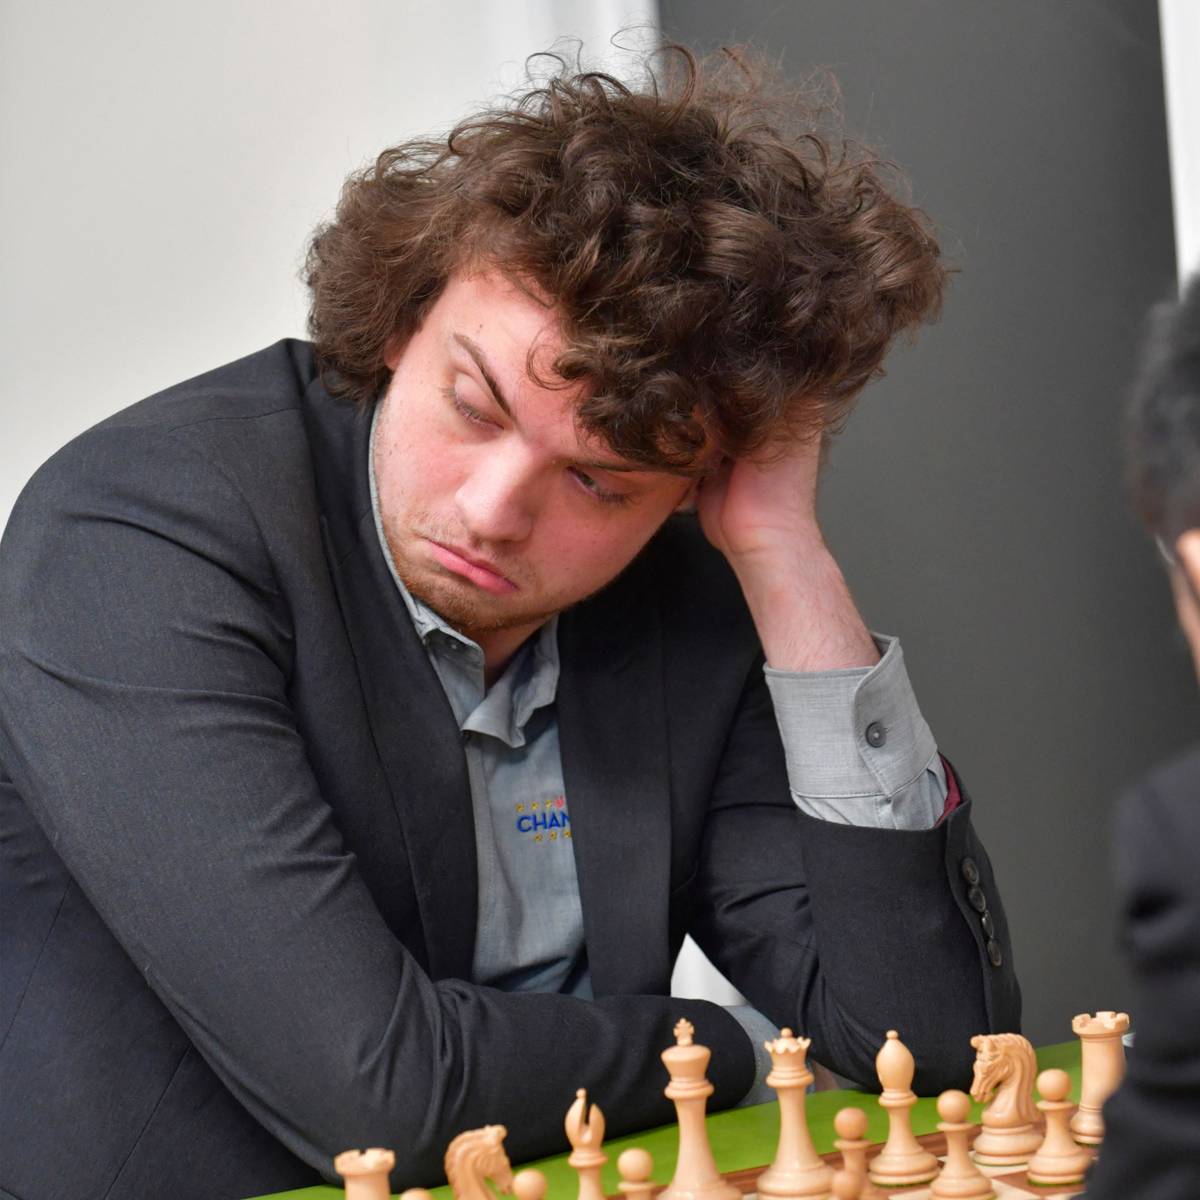 Nach den massiven Betrugsvorwürfen gegen ihn steht Schachgroßmeister Niemann bei den US-Meisterschaften wieder im Fokus. Ein Interview bricht der 19-Jährige vorzeitig ab.